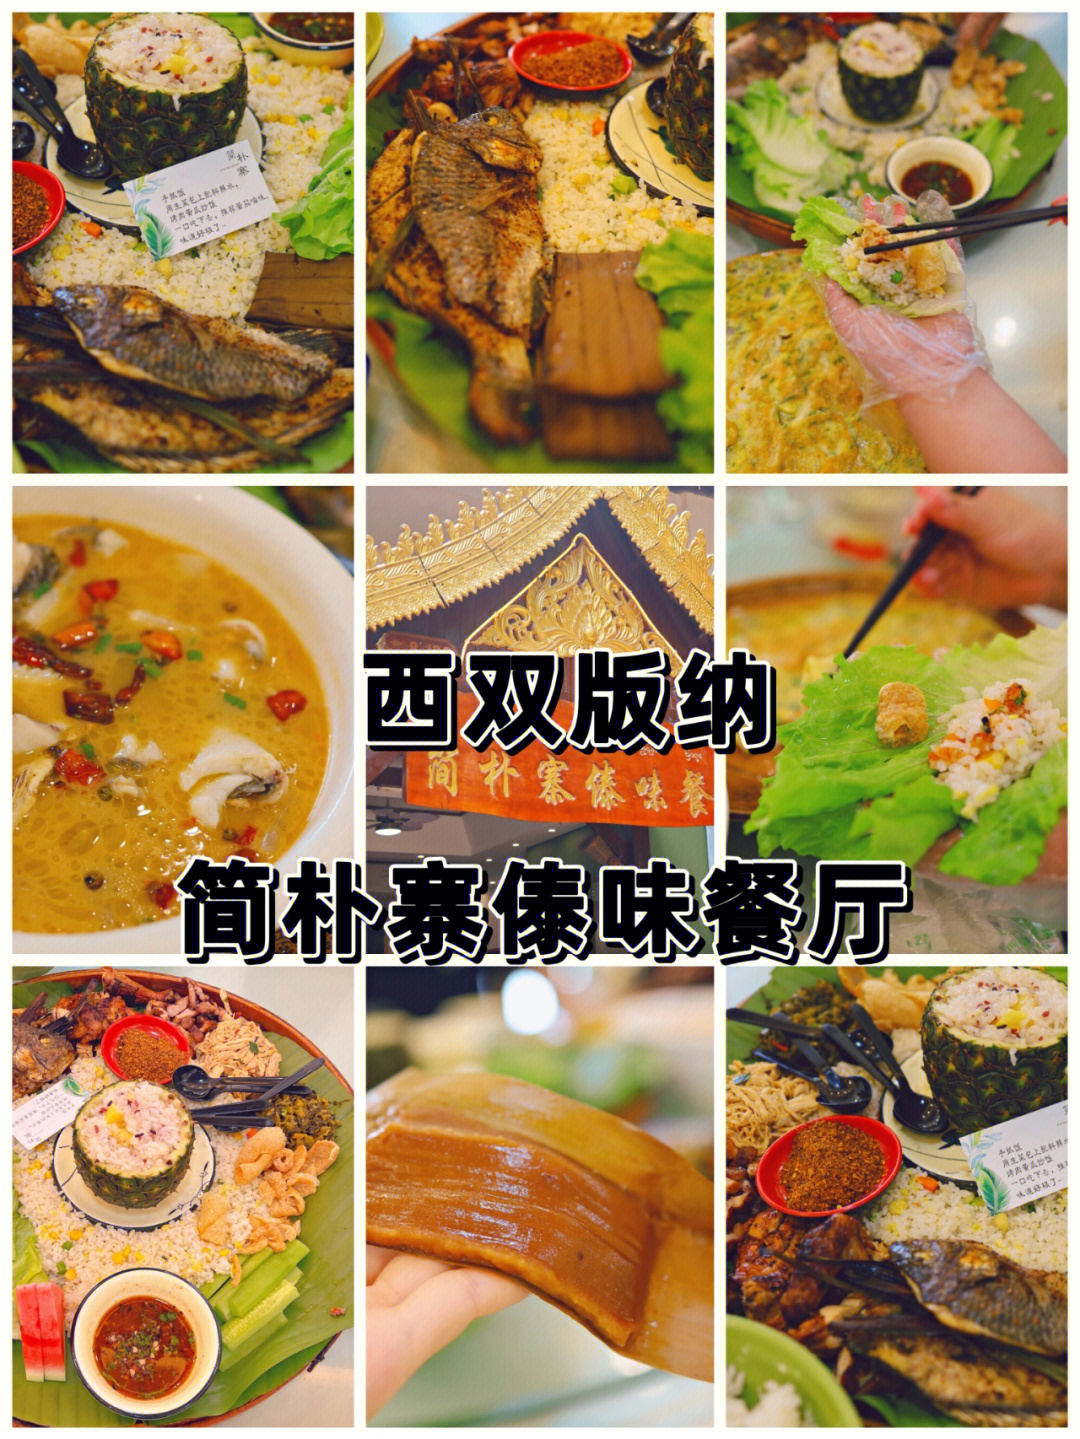 傣味餐厅菜单图片